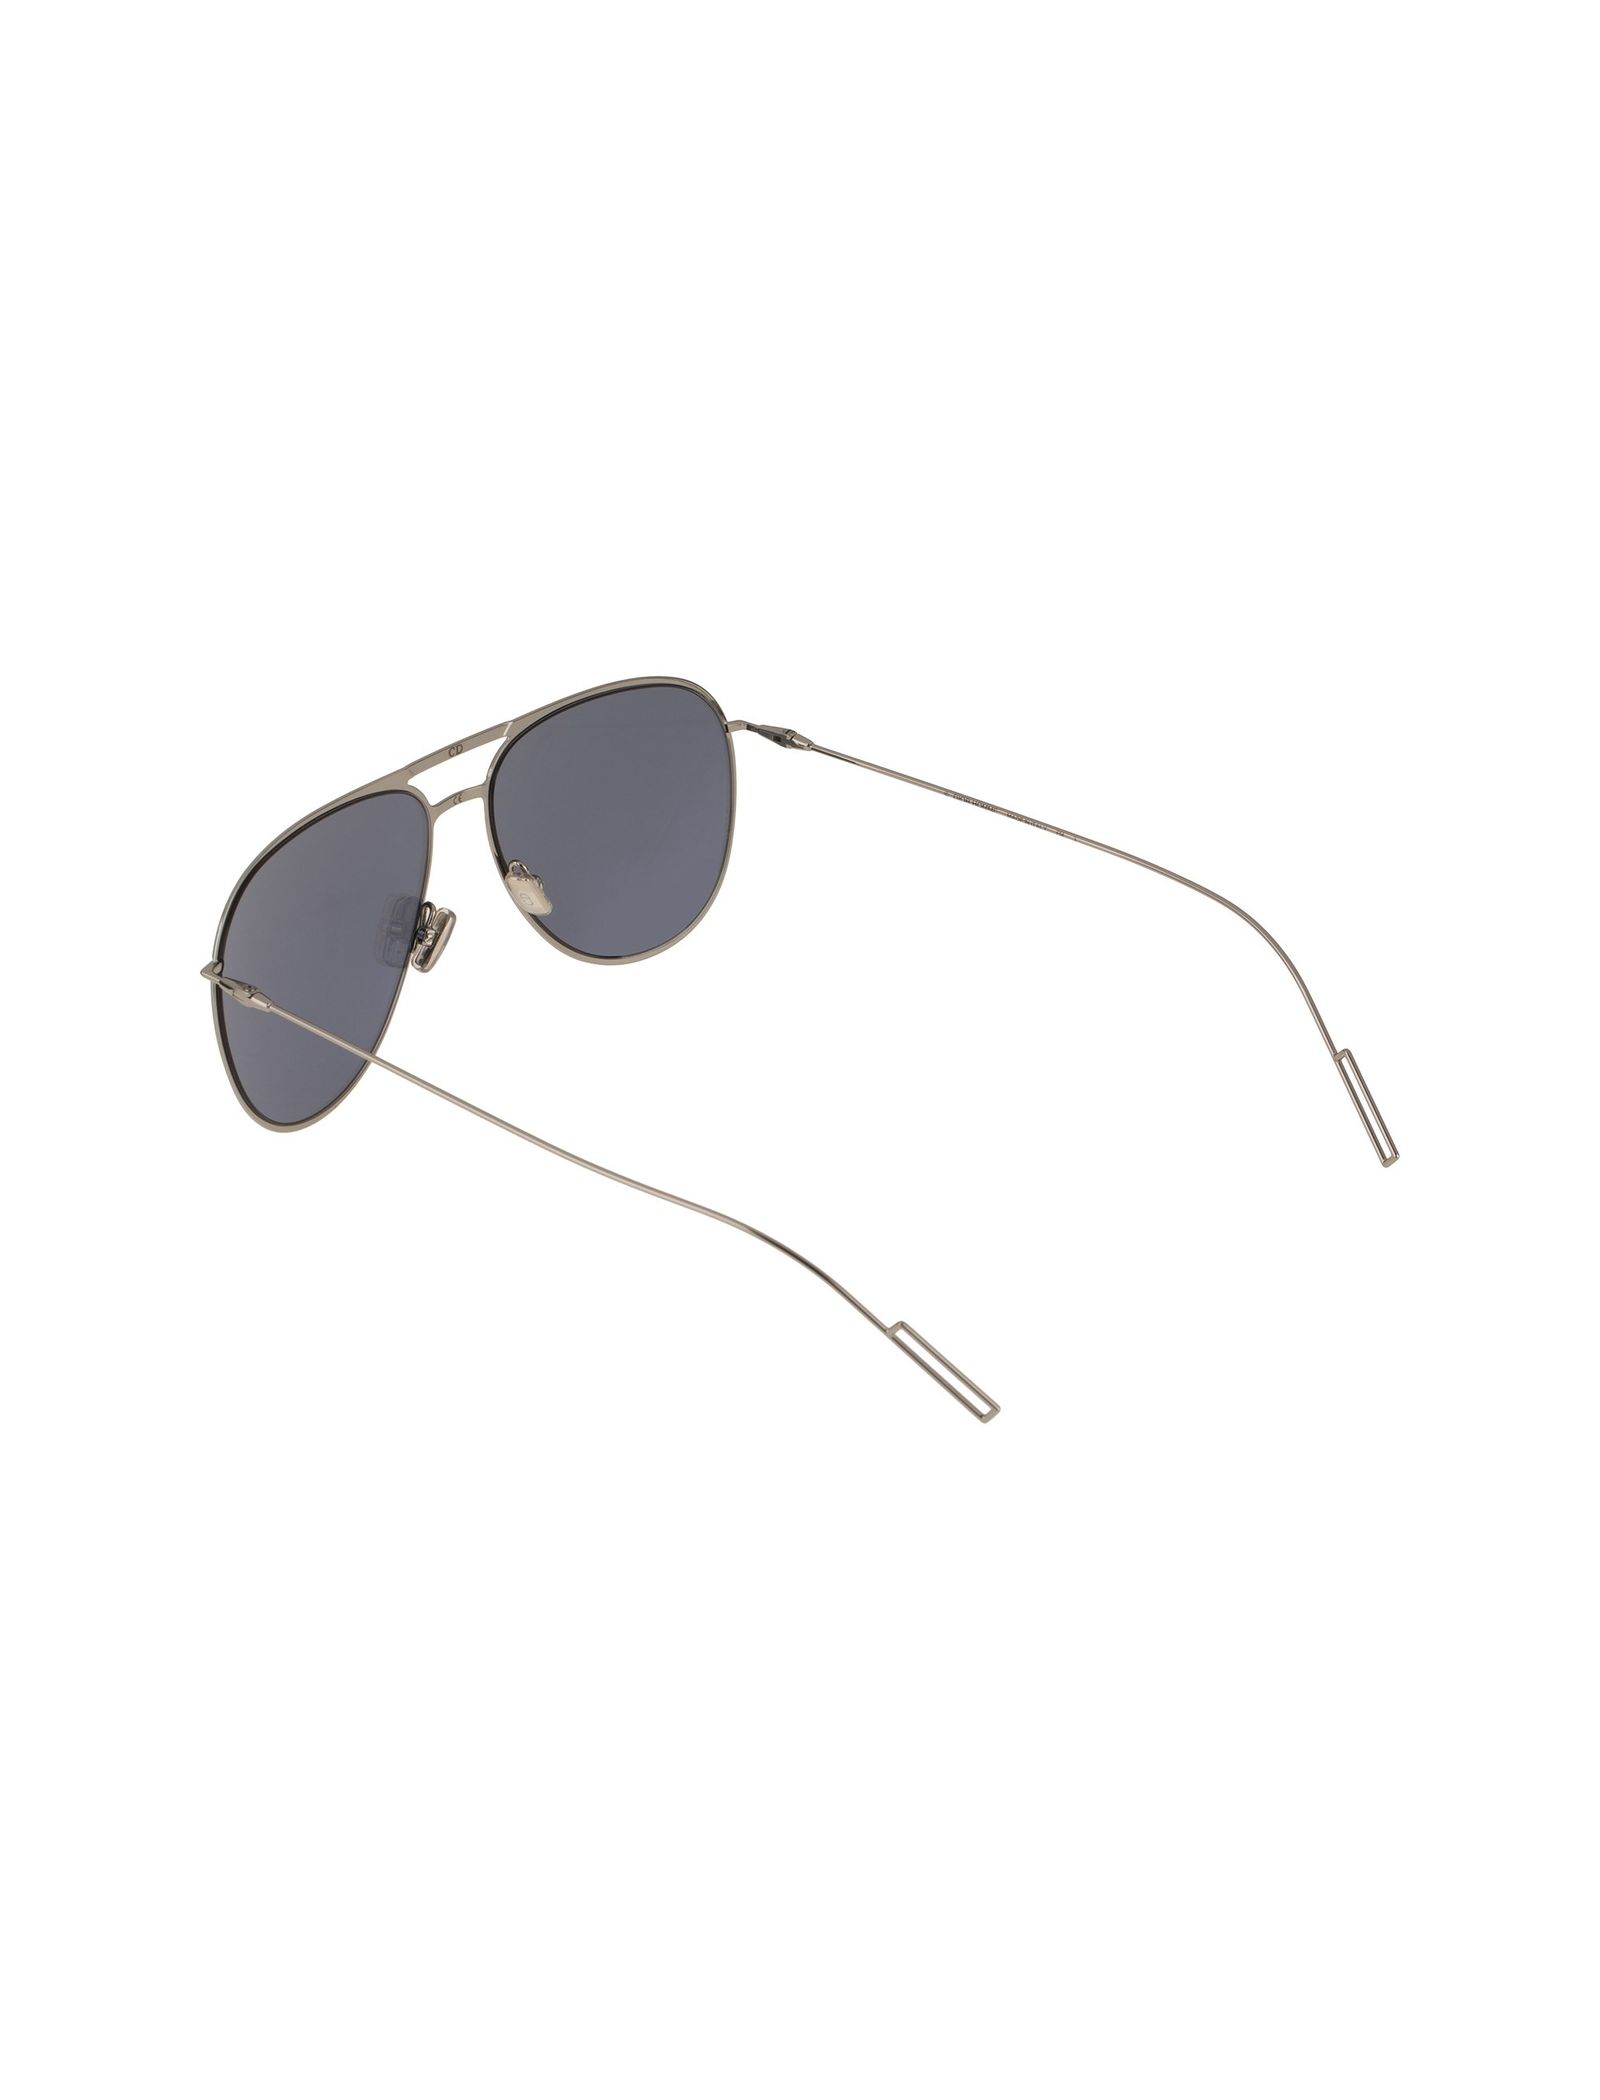 عینک آفتابی خلبانی مردانه - دیور - نقره اي - 5